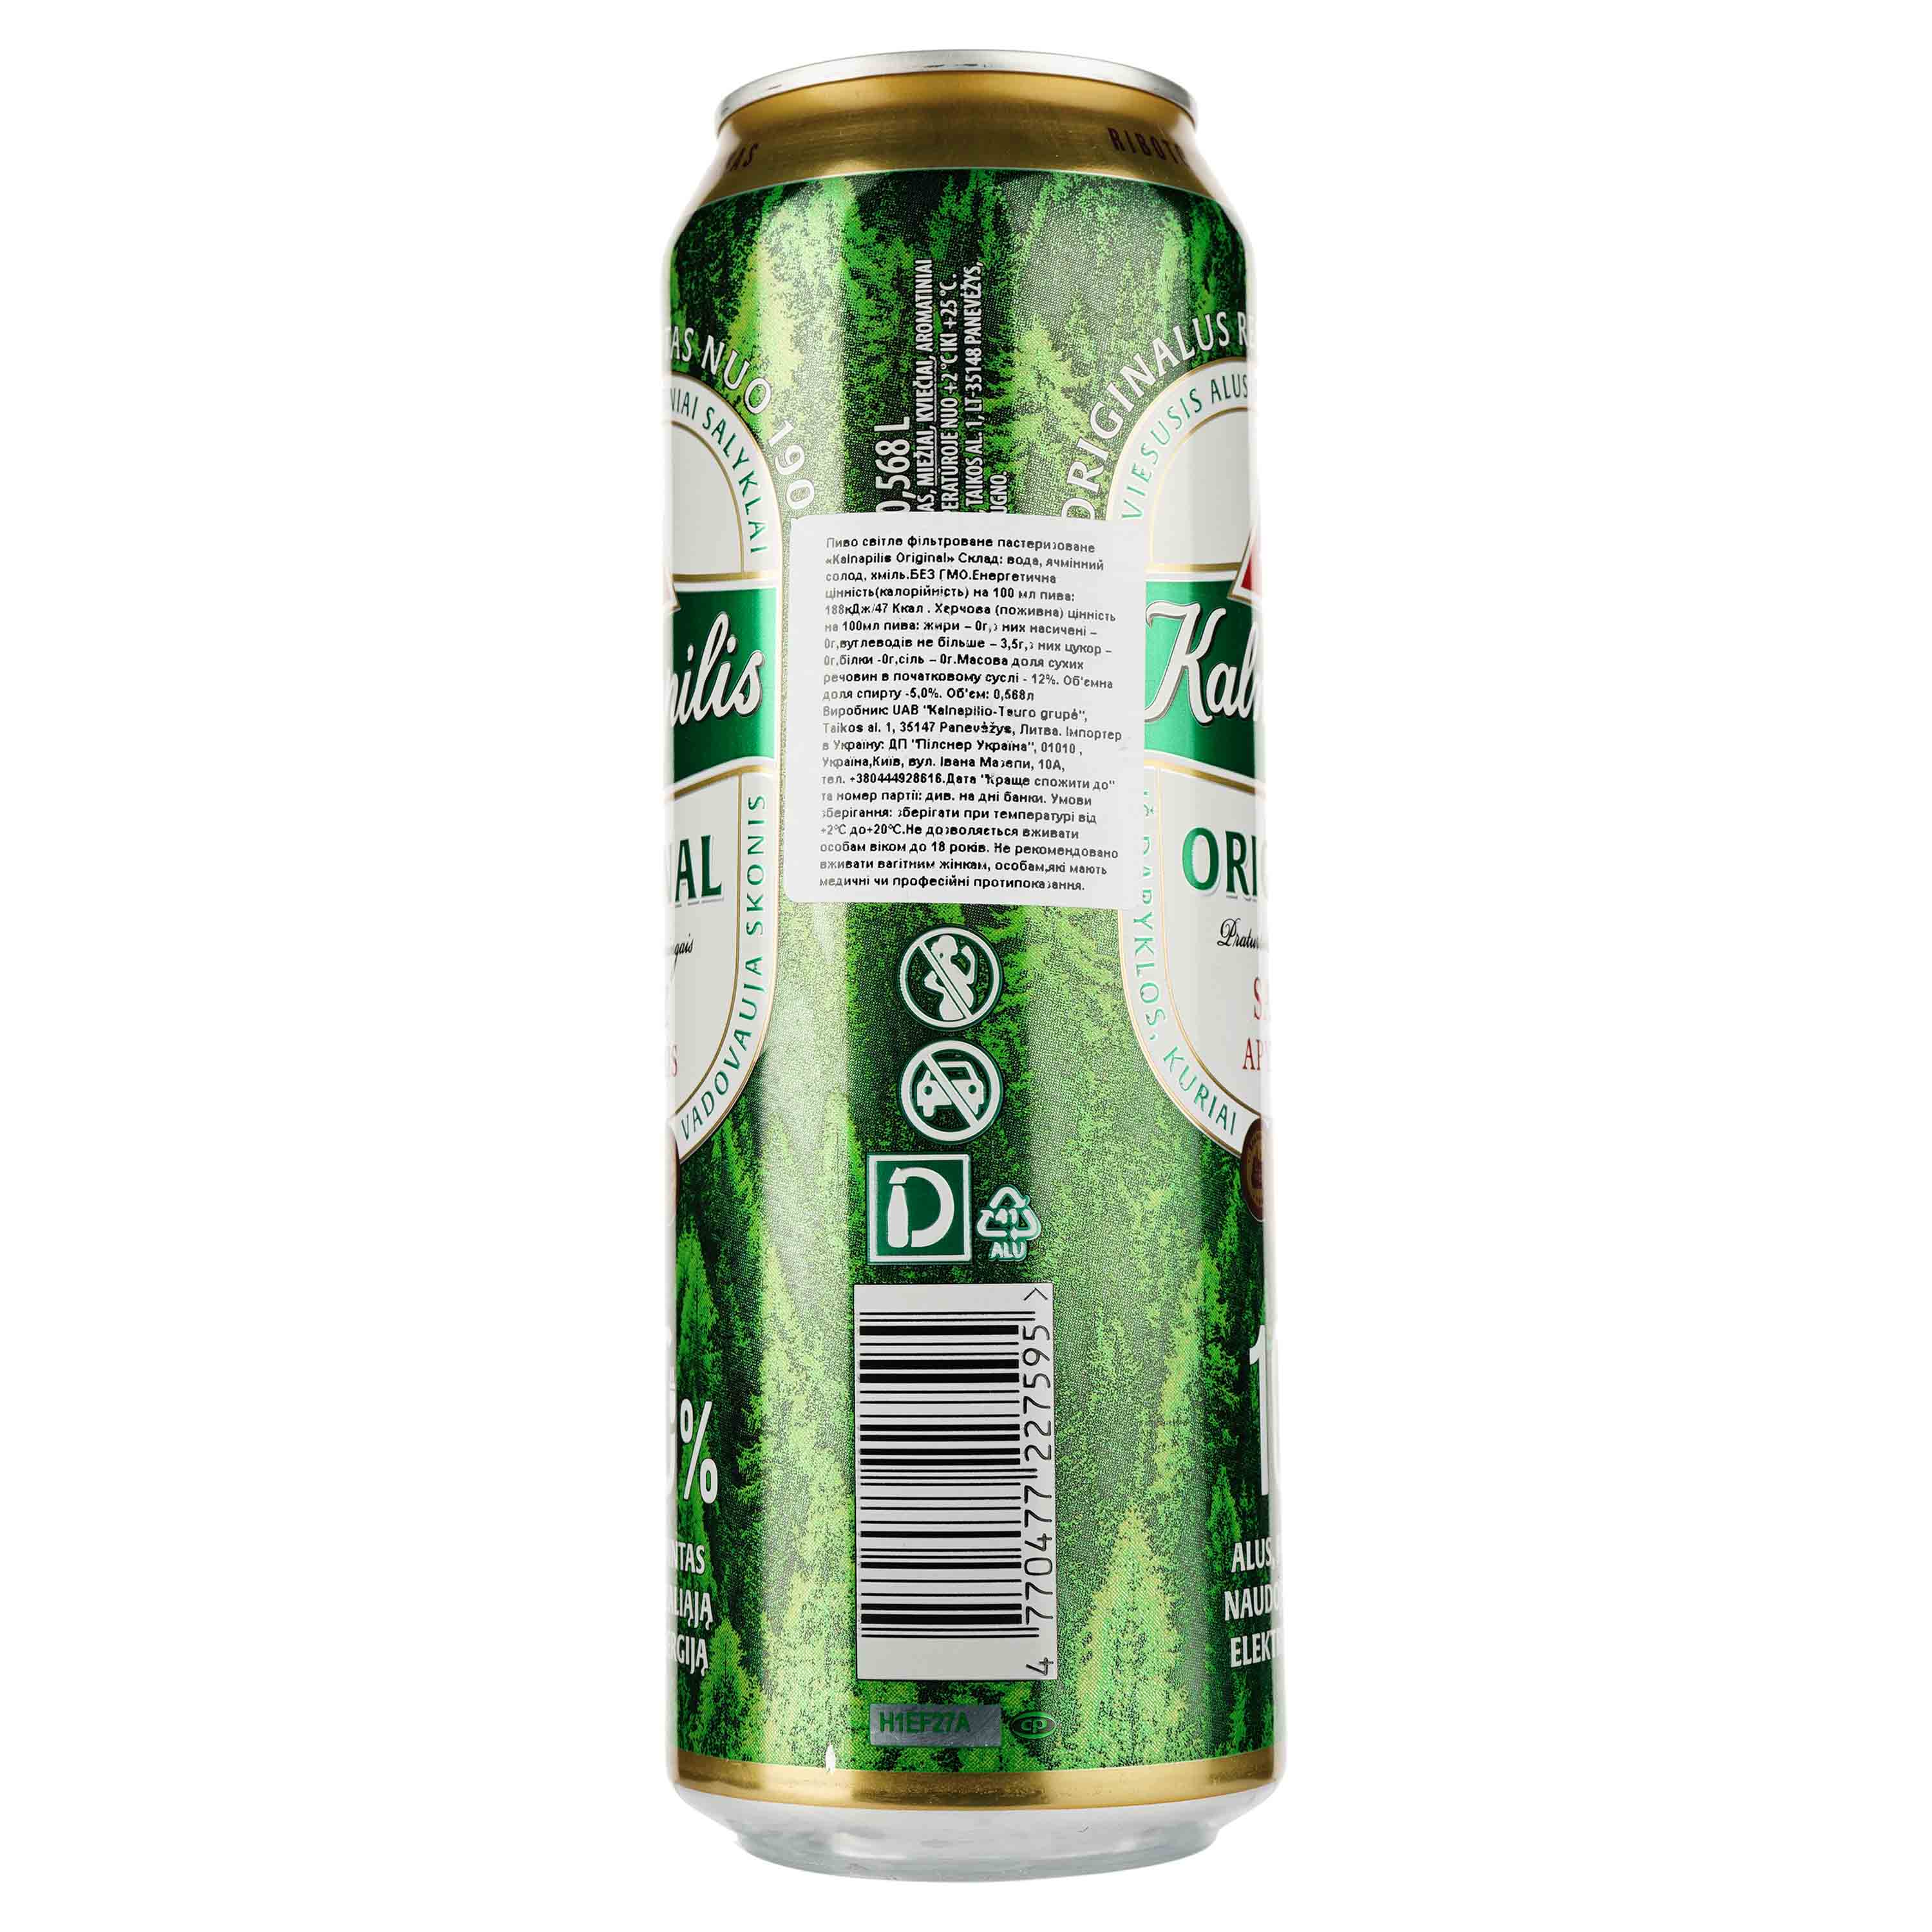 Пиво Kalnapilis Original, светлое, фильтрованное, 5%, ж/б, 0,568 л - фото 2